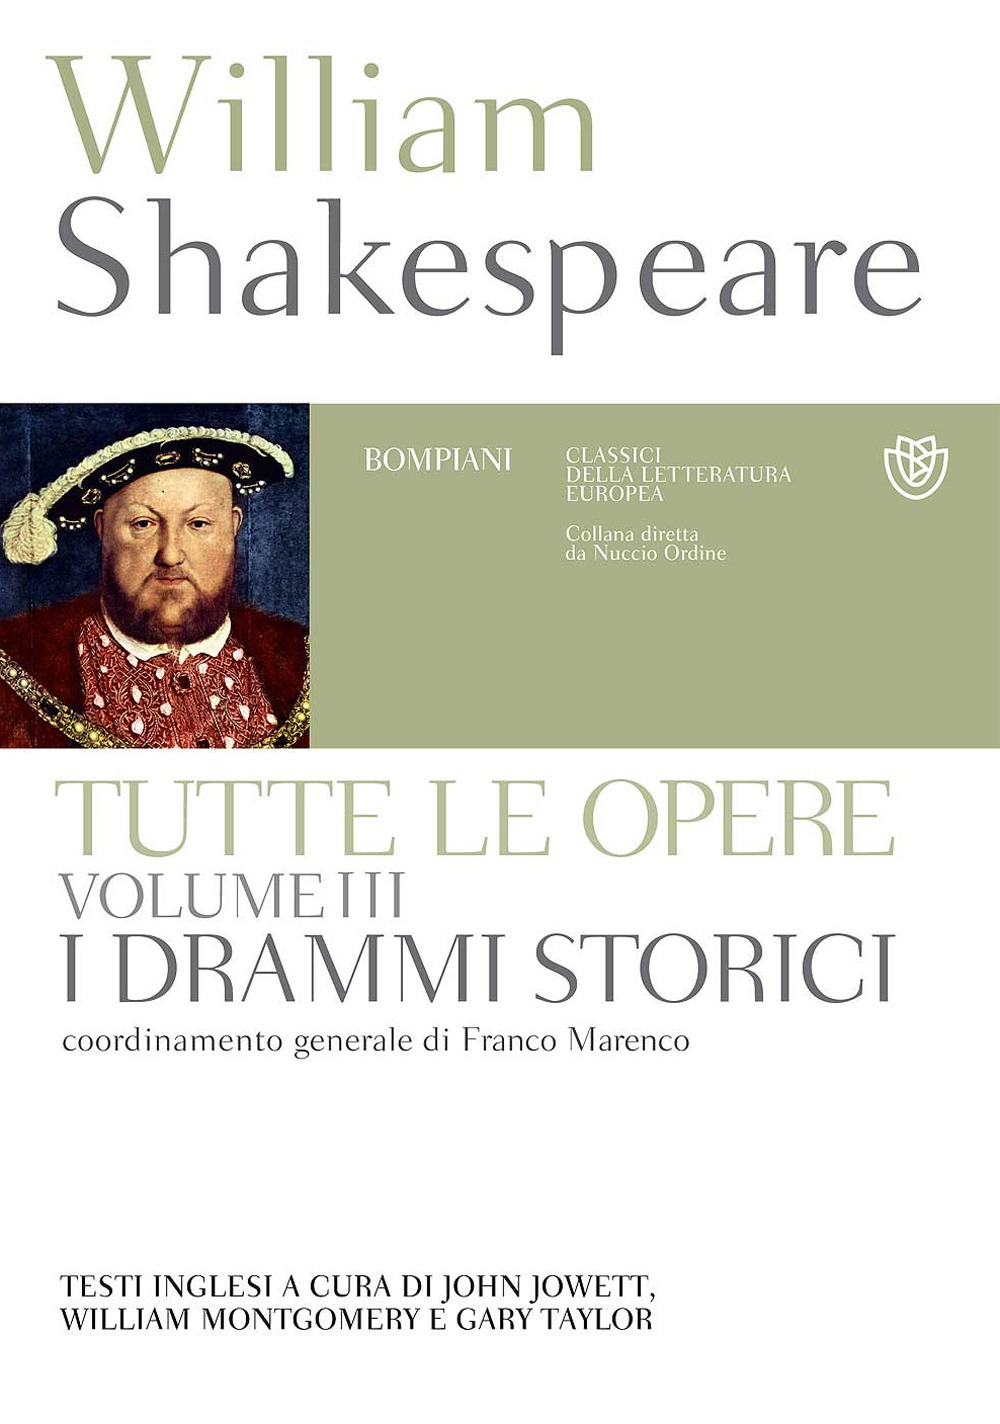 Libri William Shakespeare - Tutte Le Opere. Testo Inglese A Fronte Vol 03 NUOVO SIGILLATO, EDIZIONE DEL 15/11/2017 SUBITO DISPONIBILE